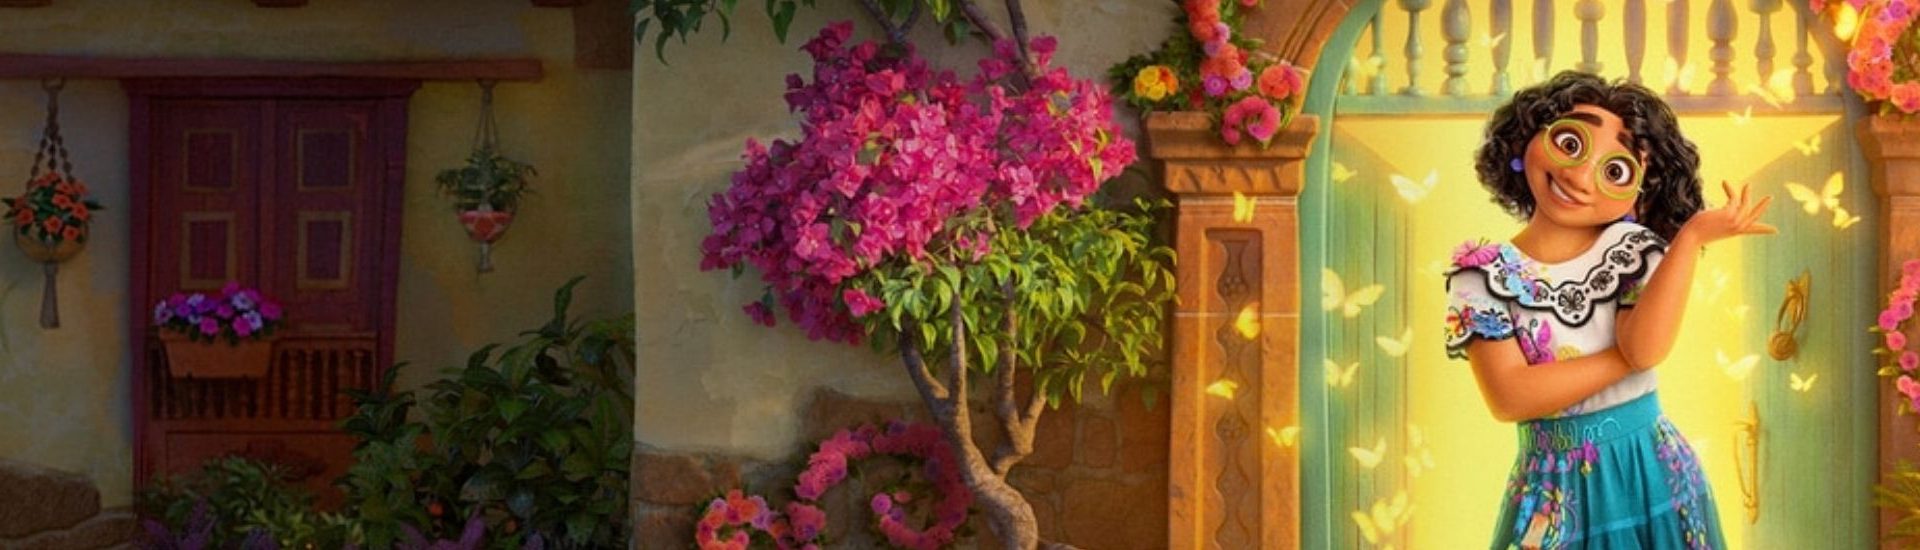 Imagen del personaje Mirabel Madrigal, protagonista de la película de Disney Encanto. En la imagen se ve de fondo una casa llena de flores.